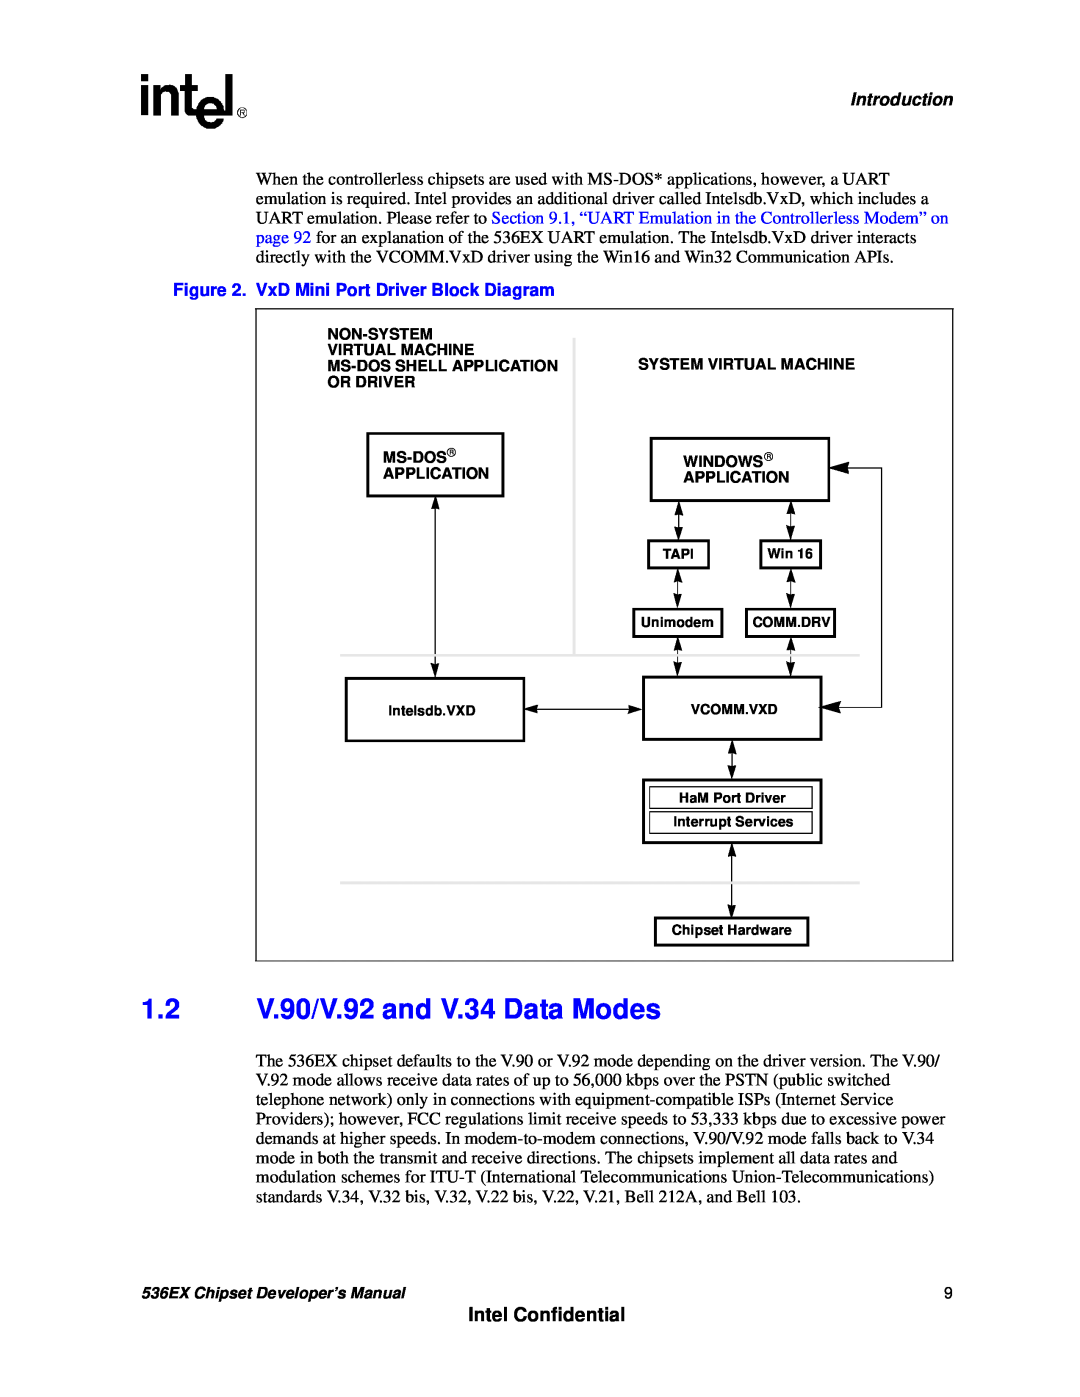 Intel 537EX manual 1.2V.90/V.92 and V.34 Data Modes, Intel Confidential, Introduction, VxD Mini Port Driver Block Diagram 